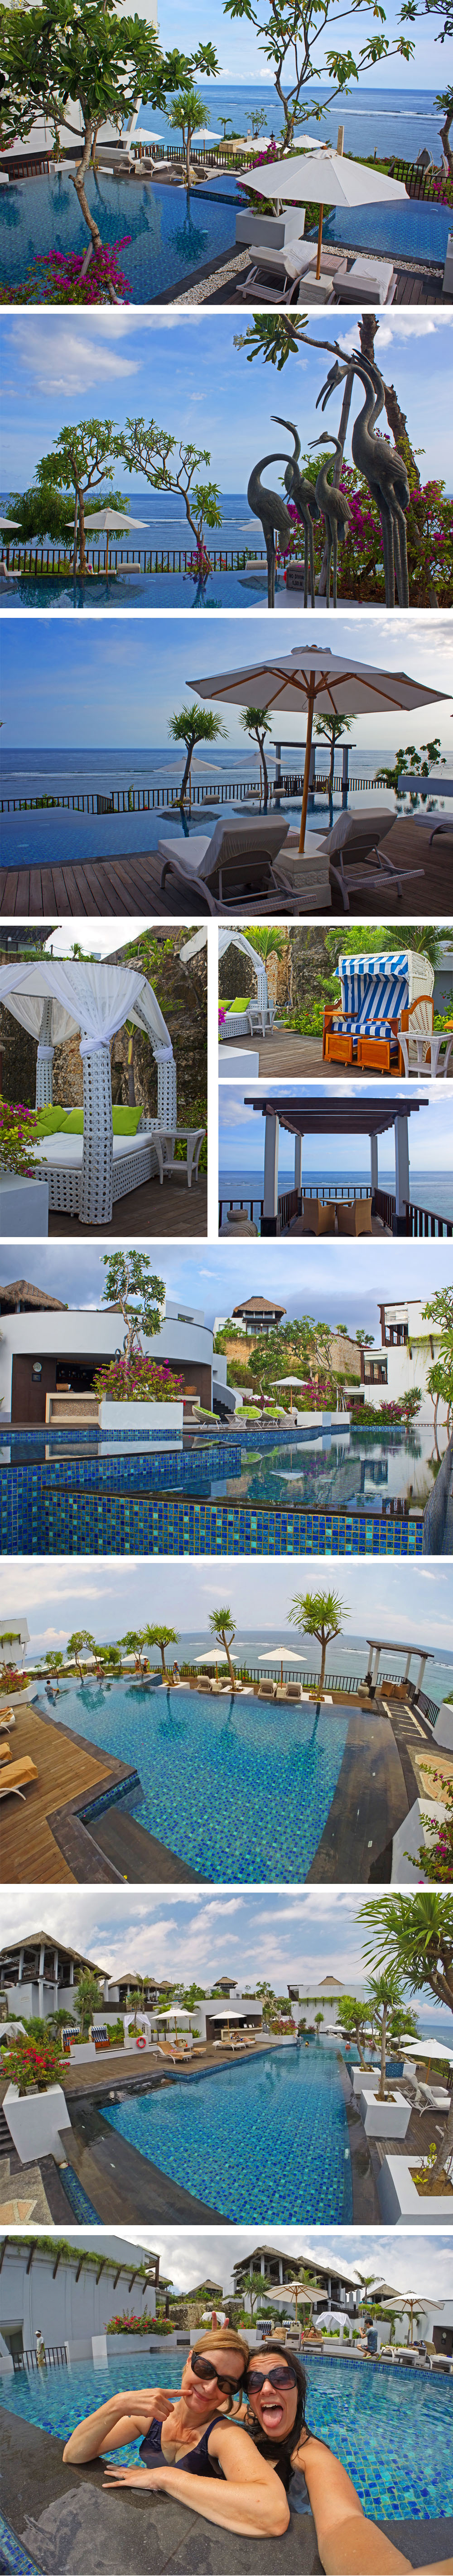 Samabe Bali - Swimming Pool